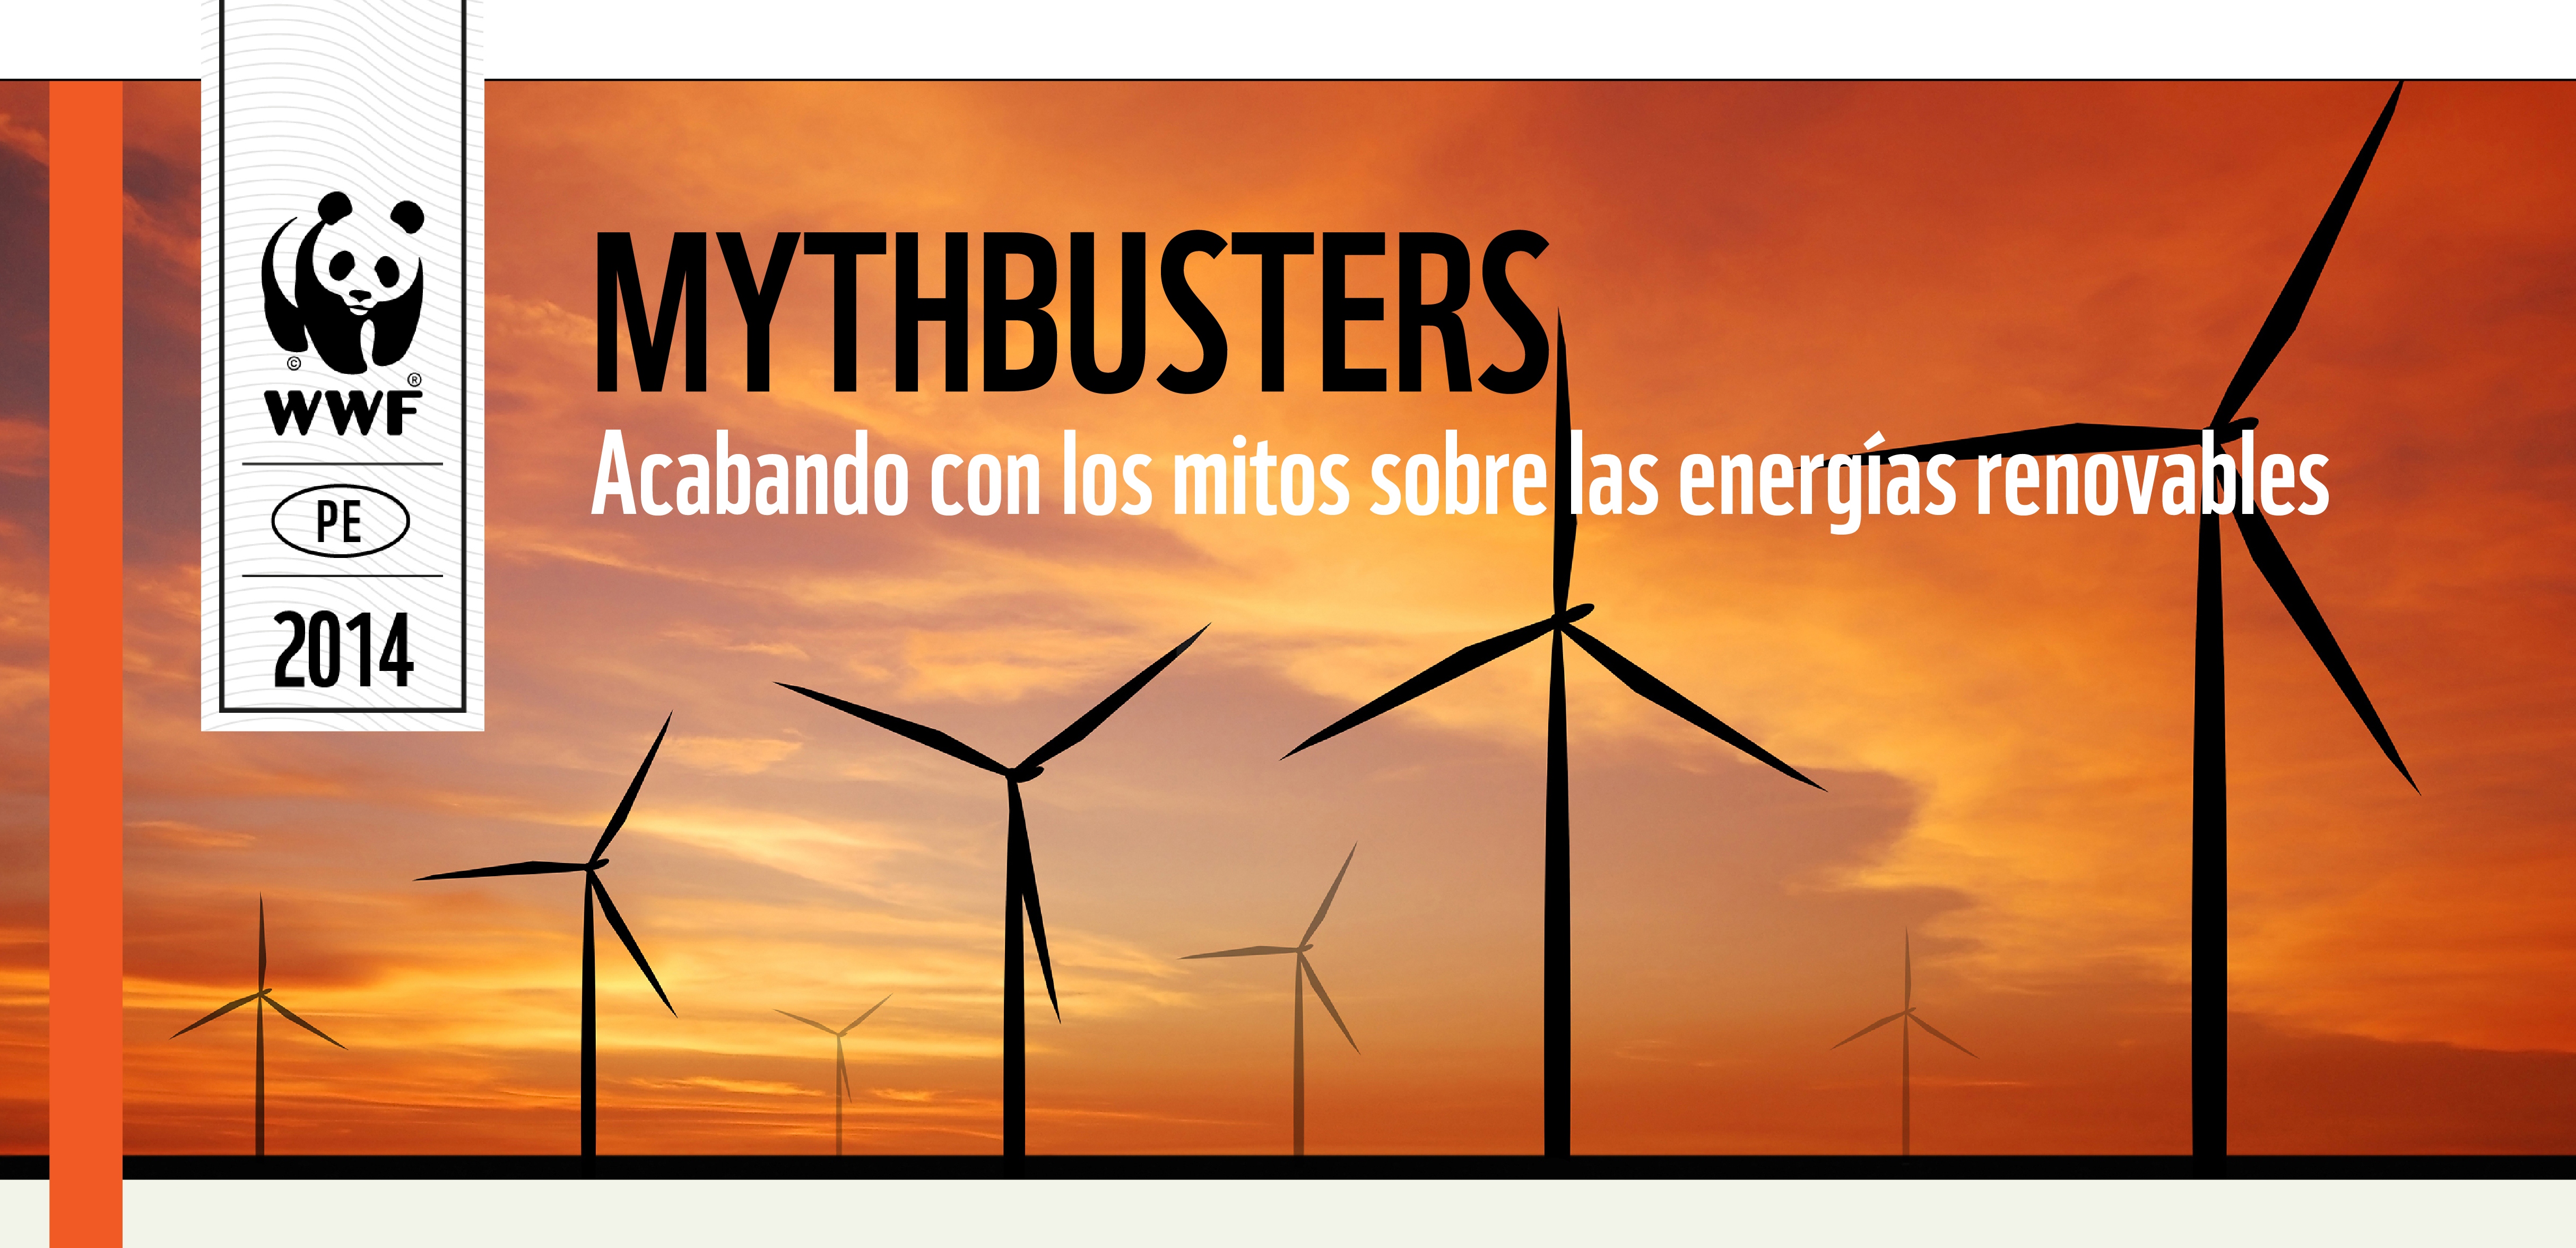 El libro titulado “Mythbusters: Acabando con los mitos sobre las energías renovables”, es una publicación de WWF Internacional que esclarece los principales mitos sobre el uso de las energías renovables, los cuales obstaculizan su desarrollo a nivel mundial. 